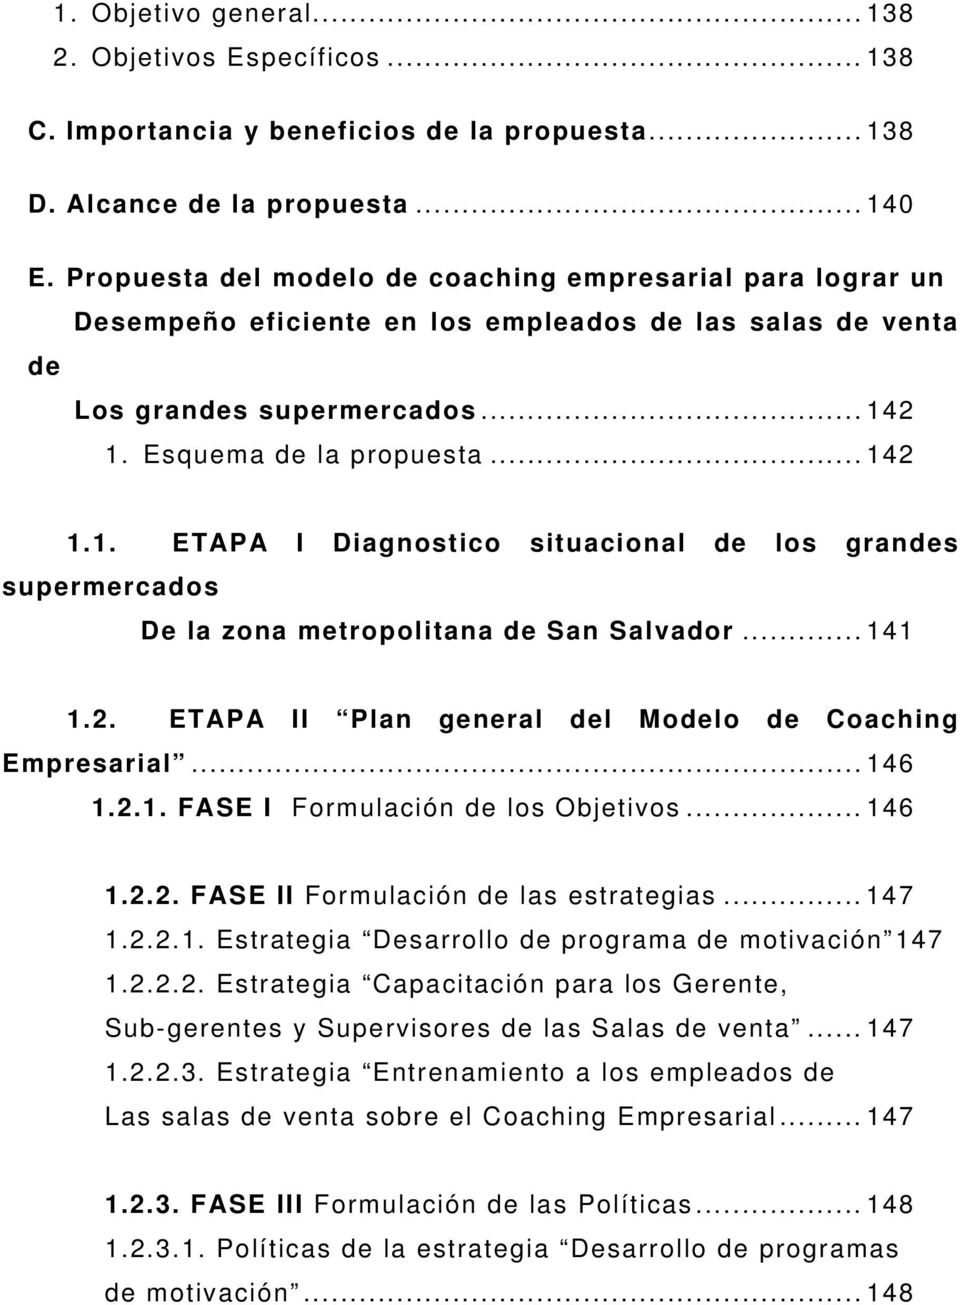 2 1. Esquema de la propuesta...142 1.1. ETAPA I Diagnostico situacional de los grandes supermercados De la zona metropolitana de San Salvador...141 1.2. ETAPA II Plan general del Modelo de Coaching Empresarial.